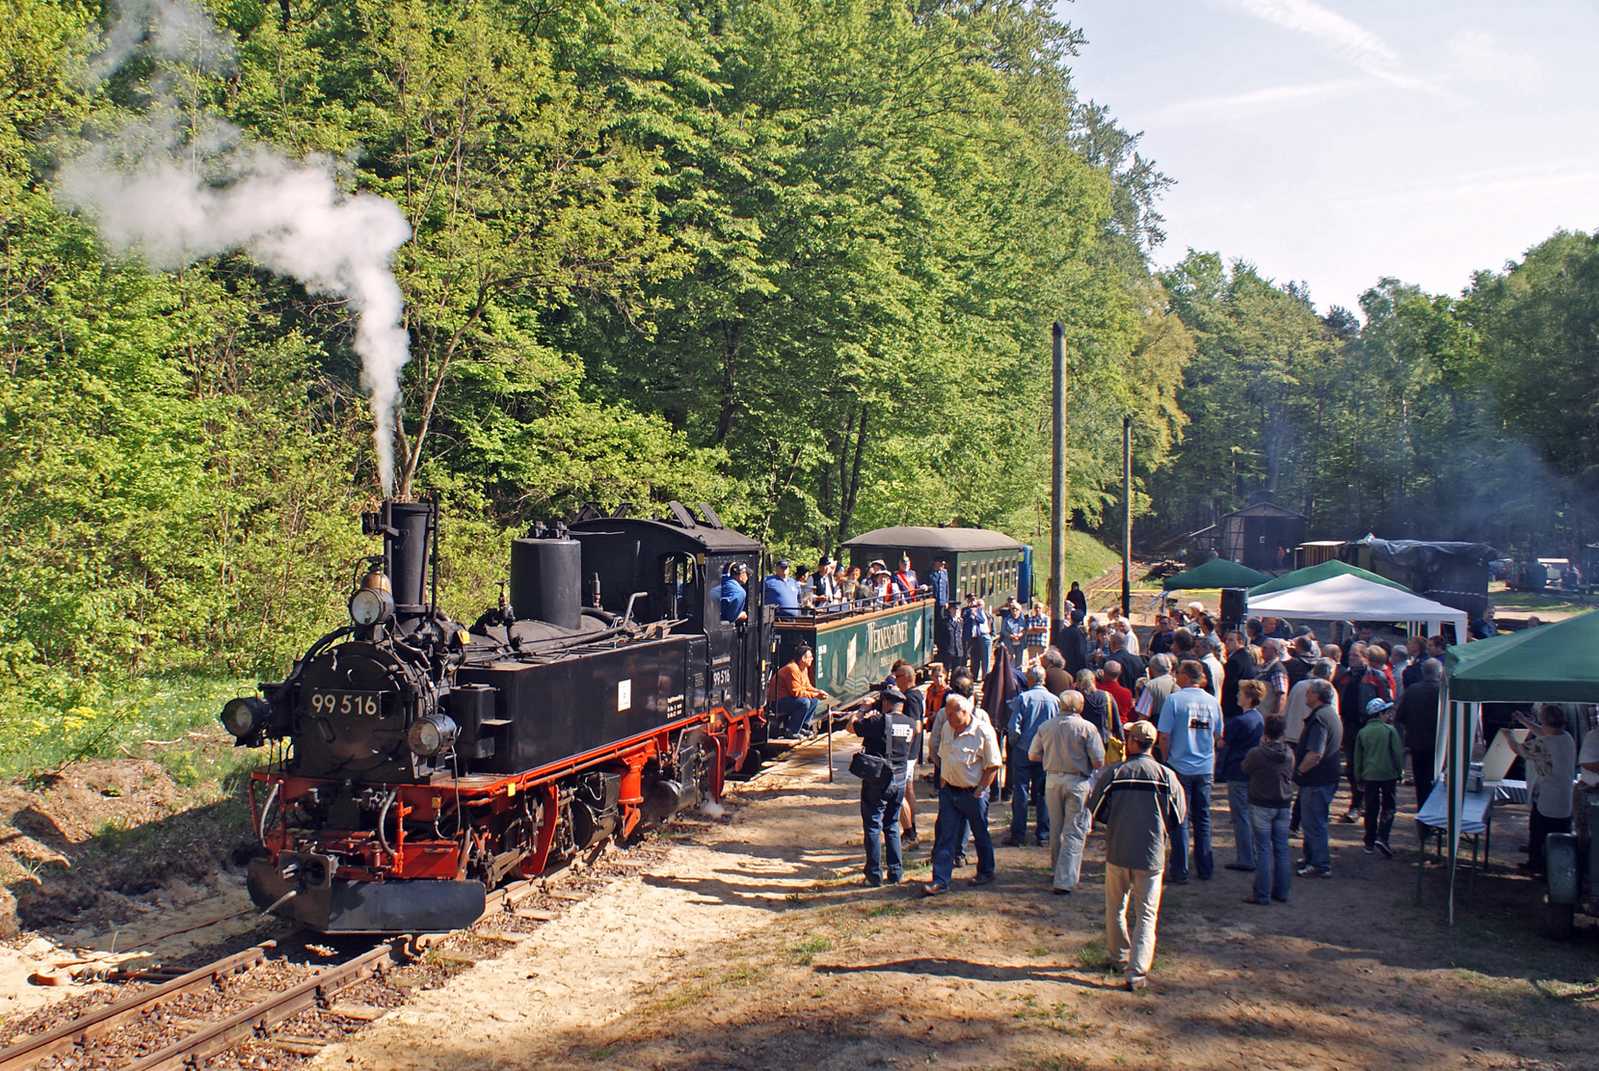 Am 7. Mai wurde mit IV K 99 516 aus Schönheide die "Museumsbahn Magdeburgerforth" mit diesem Zwei-Wagen-Zug und vielen Gästen eröffnet.